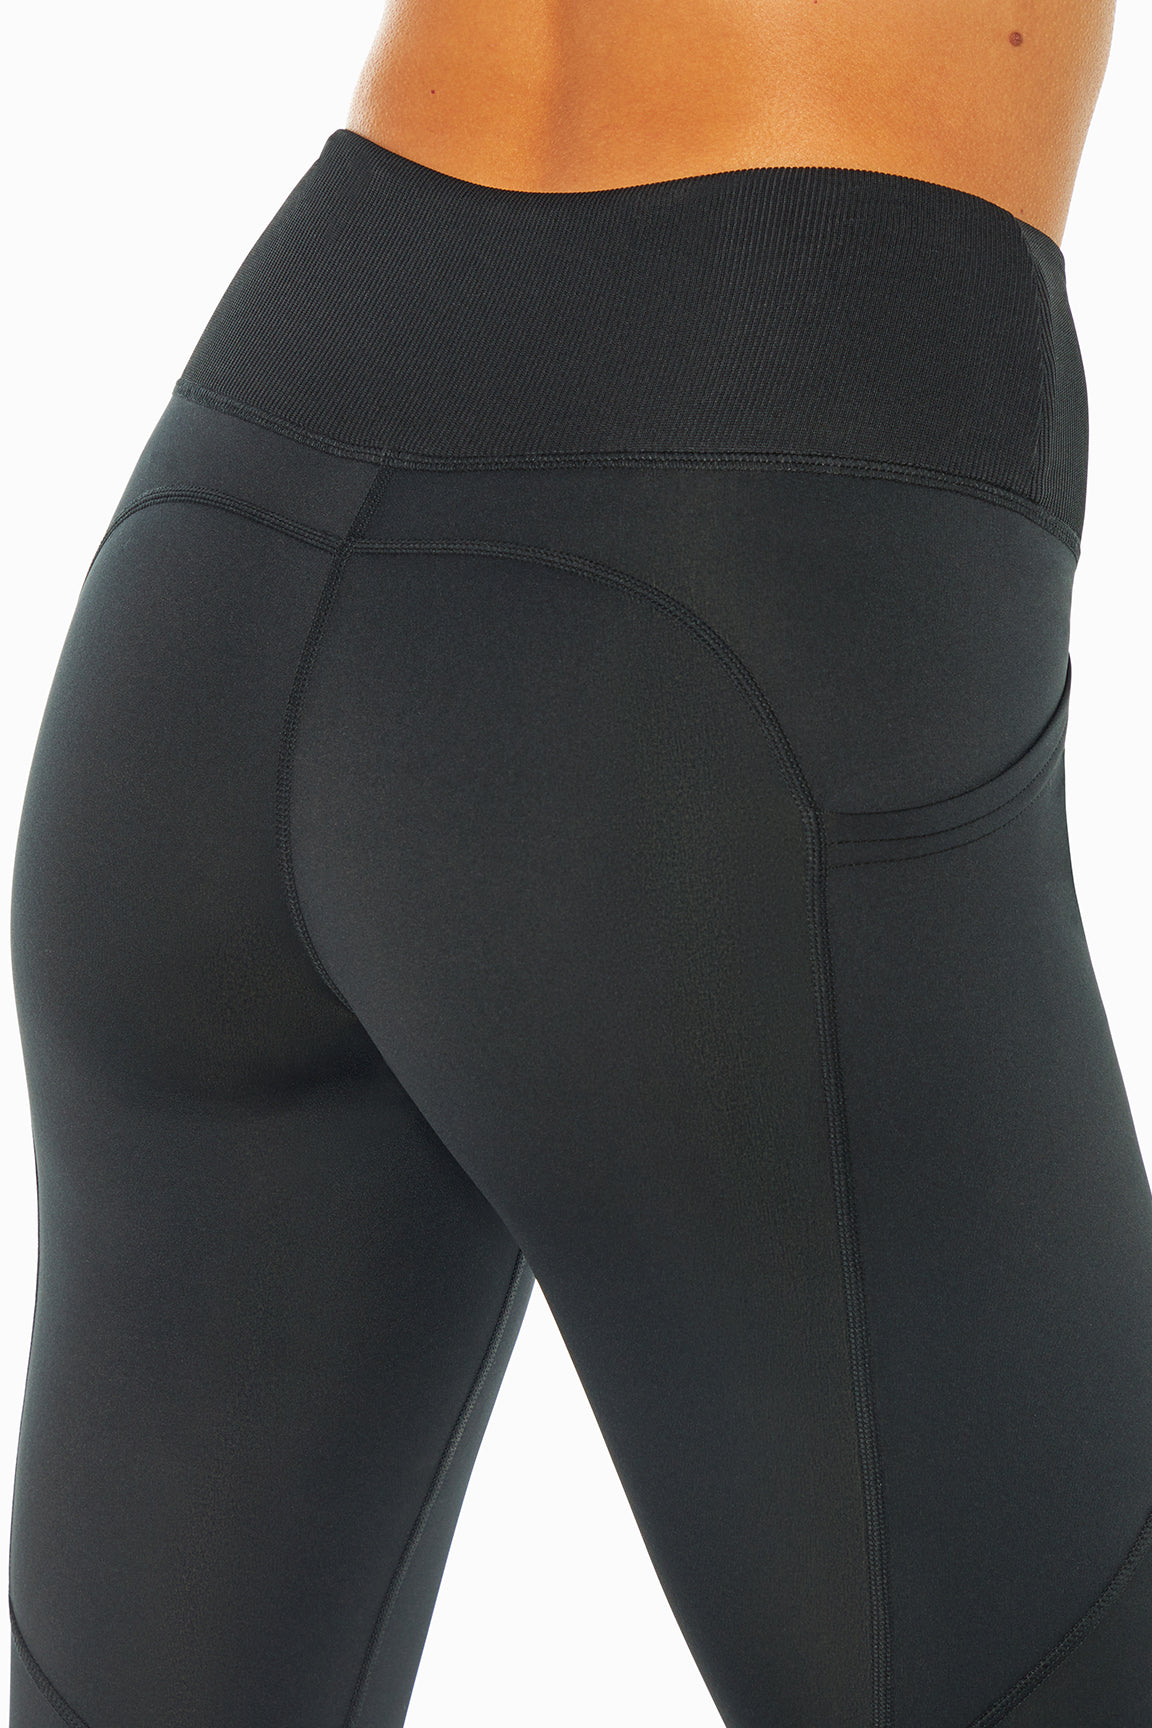 Lucky Brand Women's Black Fleece Lined Leggings J1922 Size Medium 